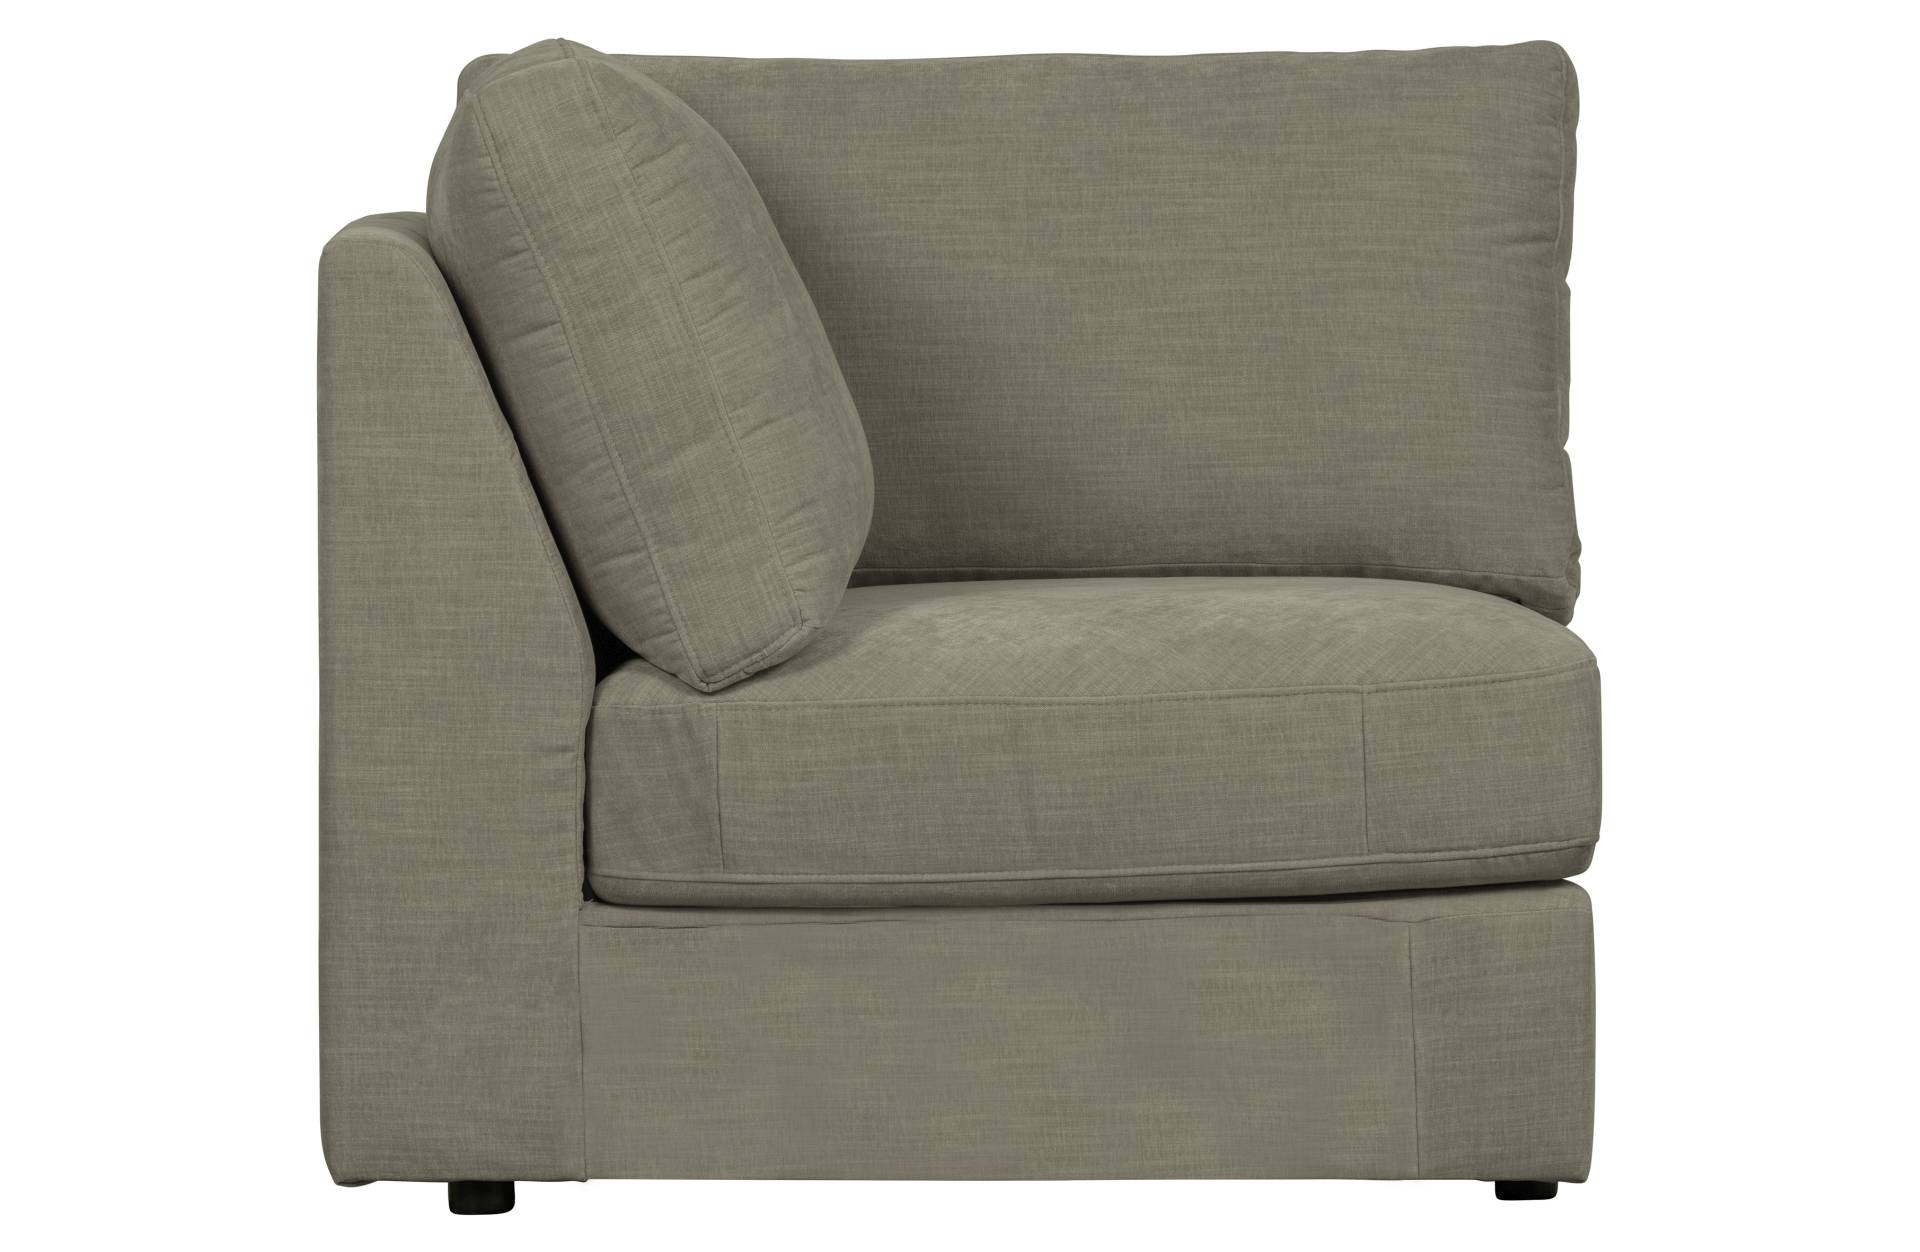 Das Modulsofa Family überzeugt mit seinem modernen Design. Das Eck Element wurde aus Gewebe-Stoff gefertigt, welcher einen einen grauen Farbton besitzen. Das Gestell ist aus Metall und hat eine schwarze Farbe. Das Element hat eine Sitzhöhe von 44 cm.